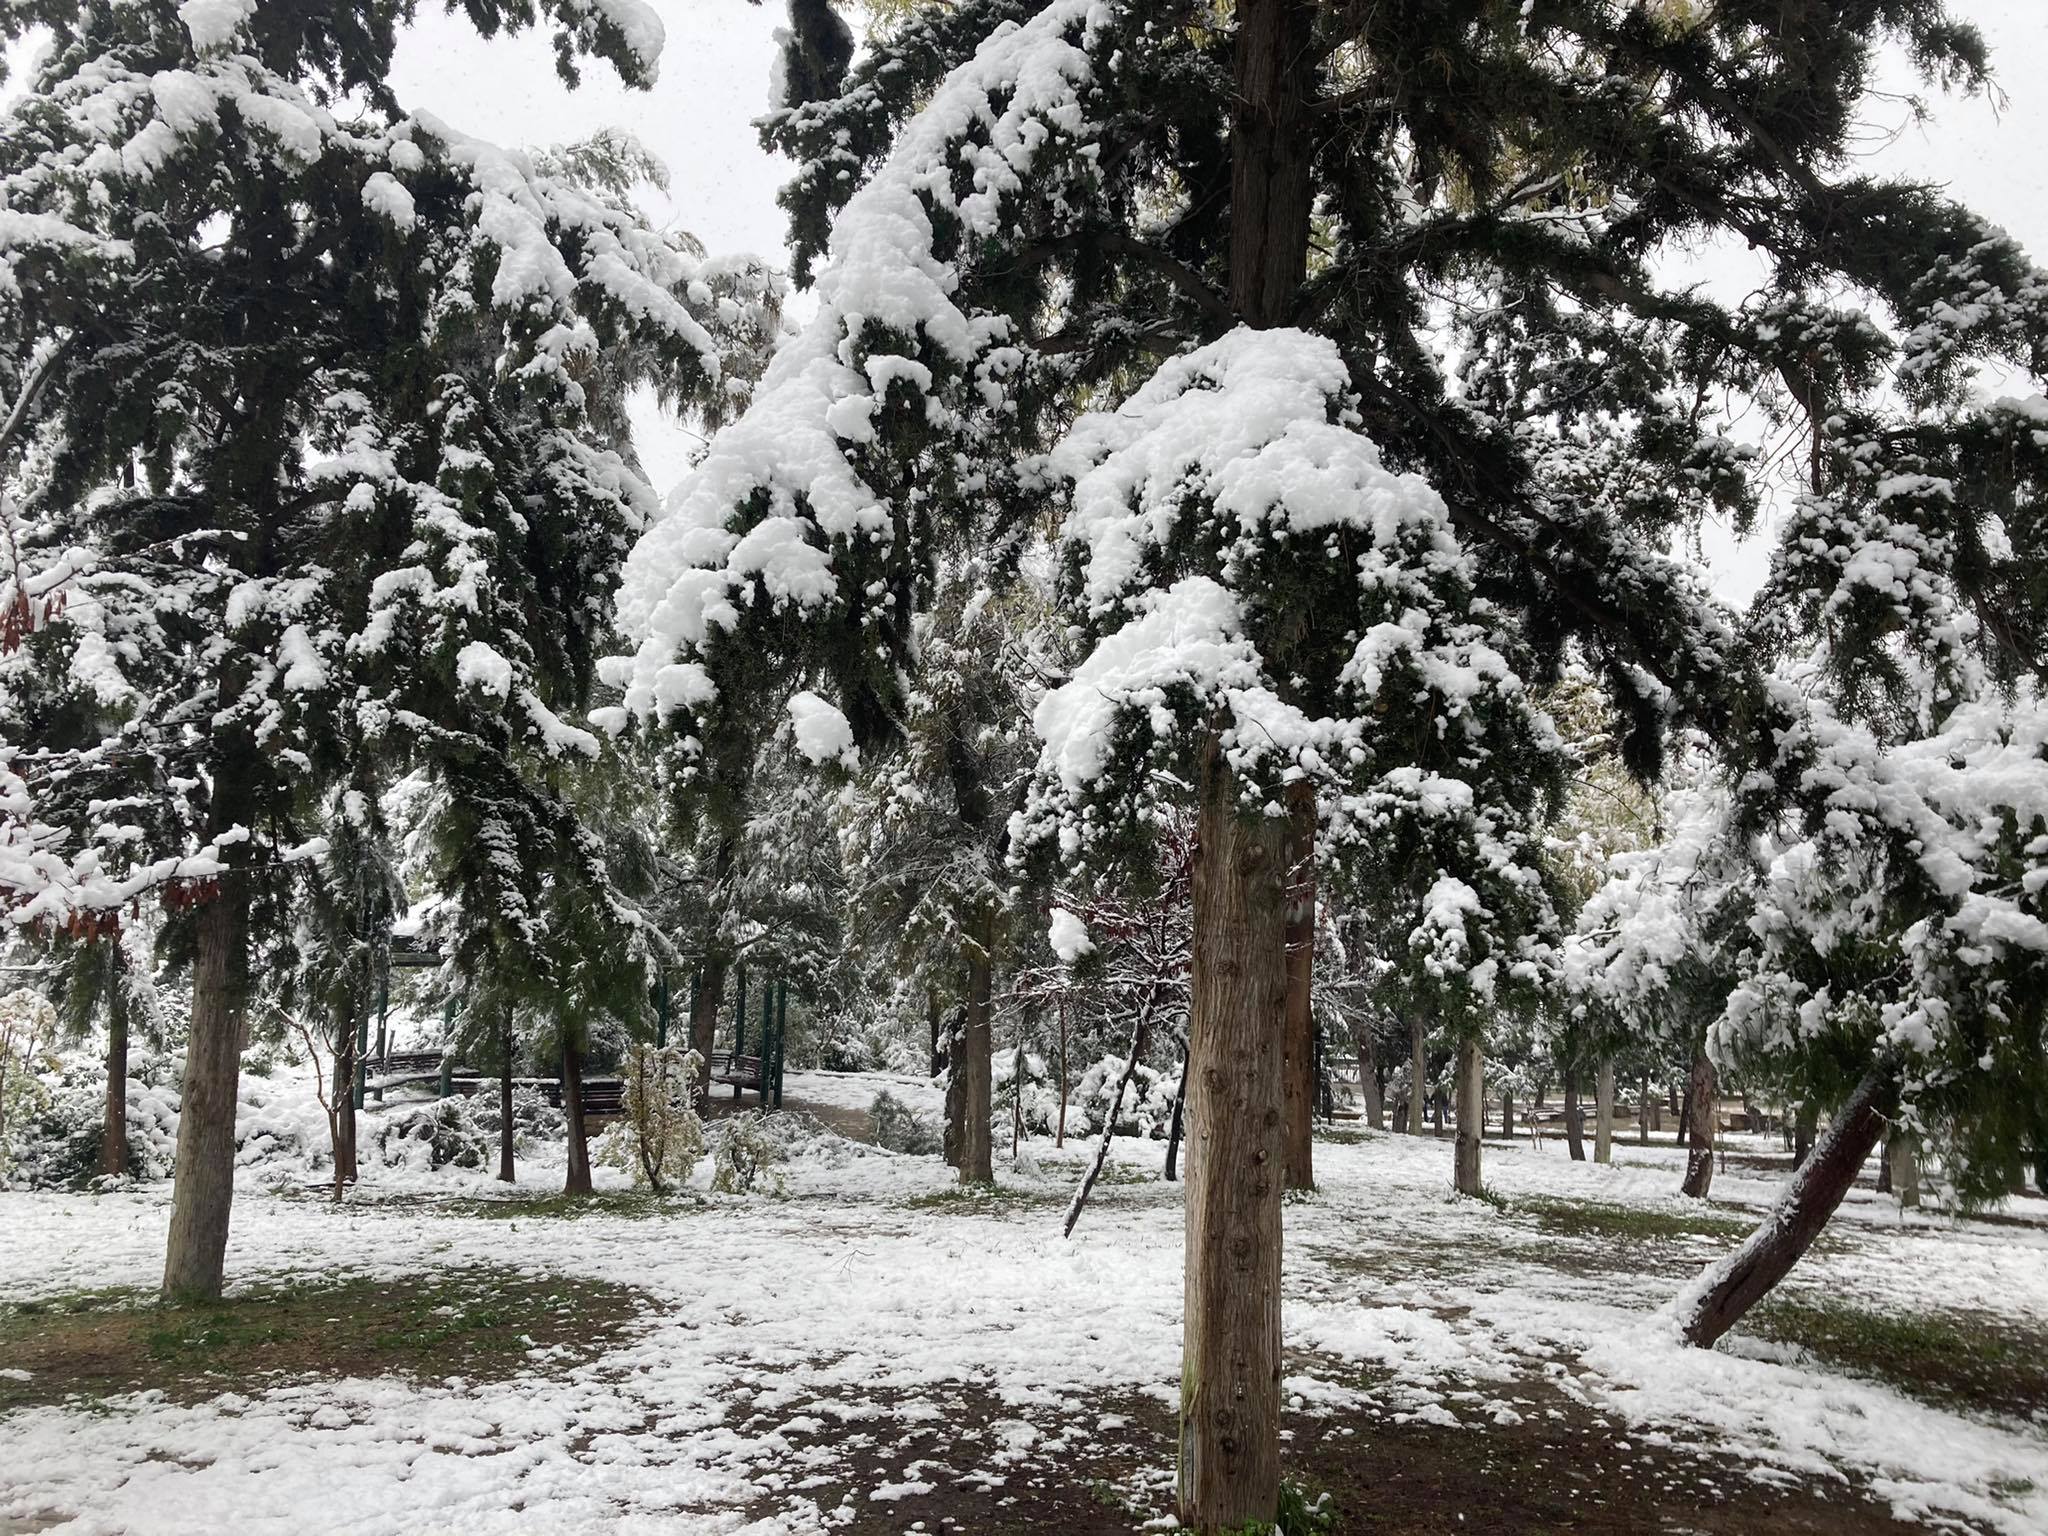 Υπουργείο Περιβάλλοντος: Απαγόρευση θήρας λόγω χιονοπτώσεων με εντολή του Υφυπουργού Περιβάλλοντος και Ενέργειας, Γιώργου Αμυρά